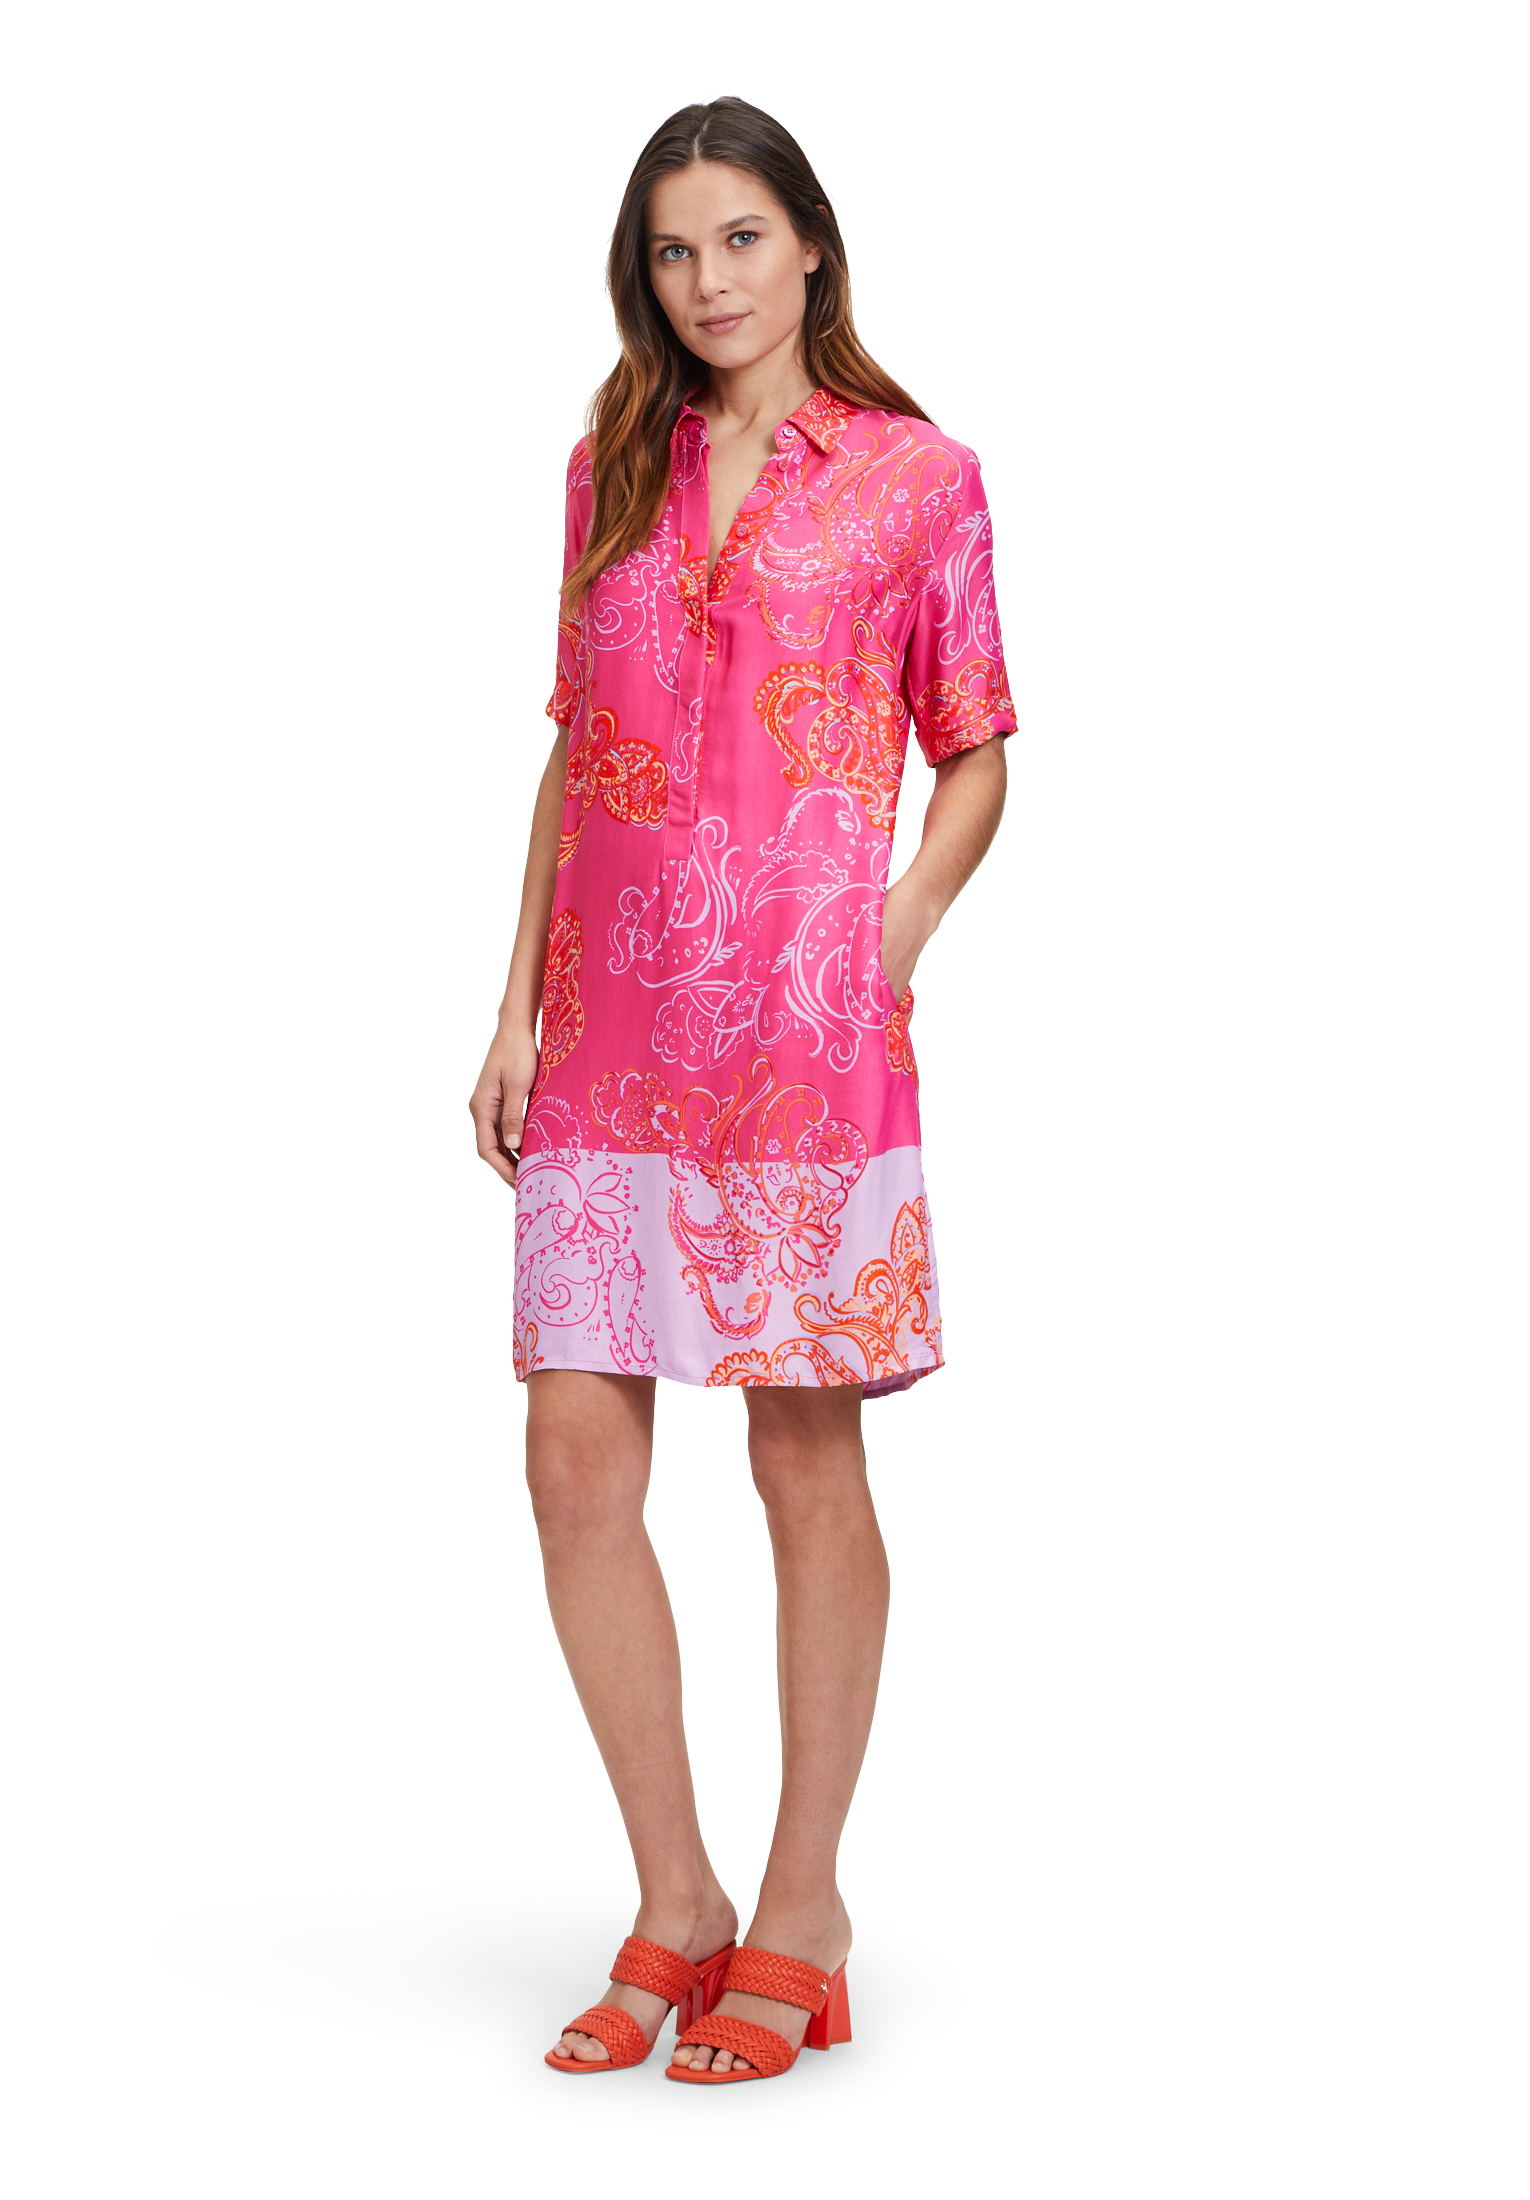 Betty Barclay letní košilové šaty 1547/2586 4843 Růžová 36